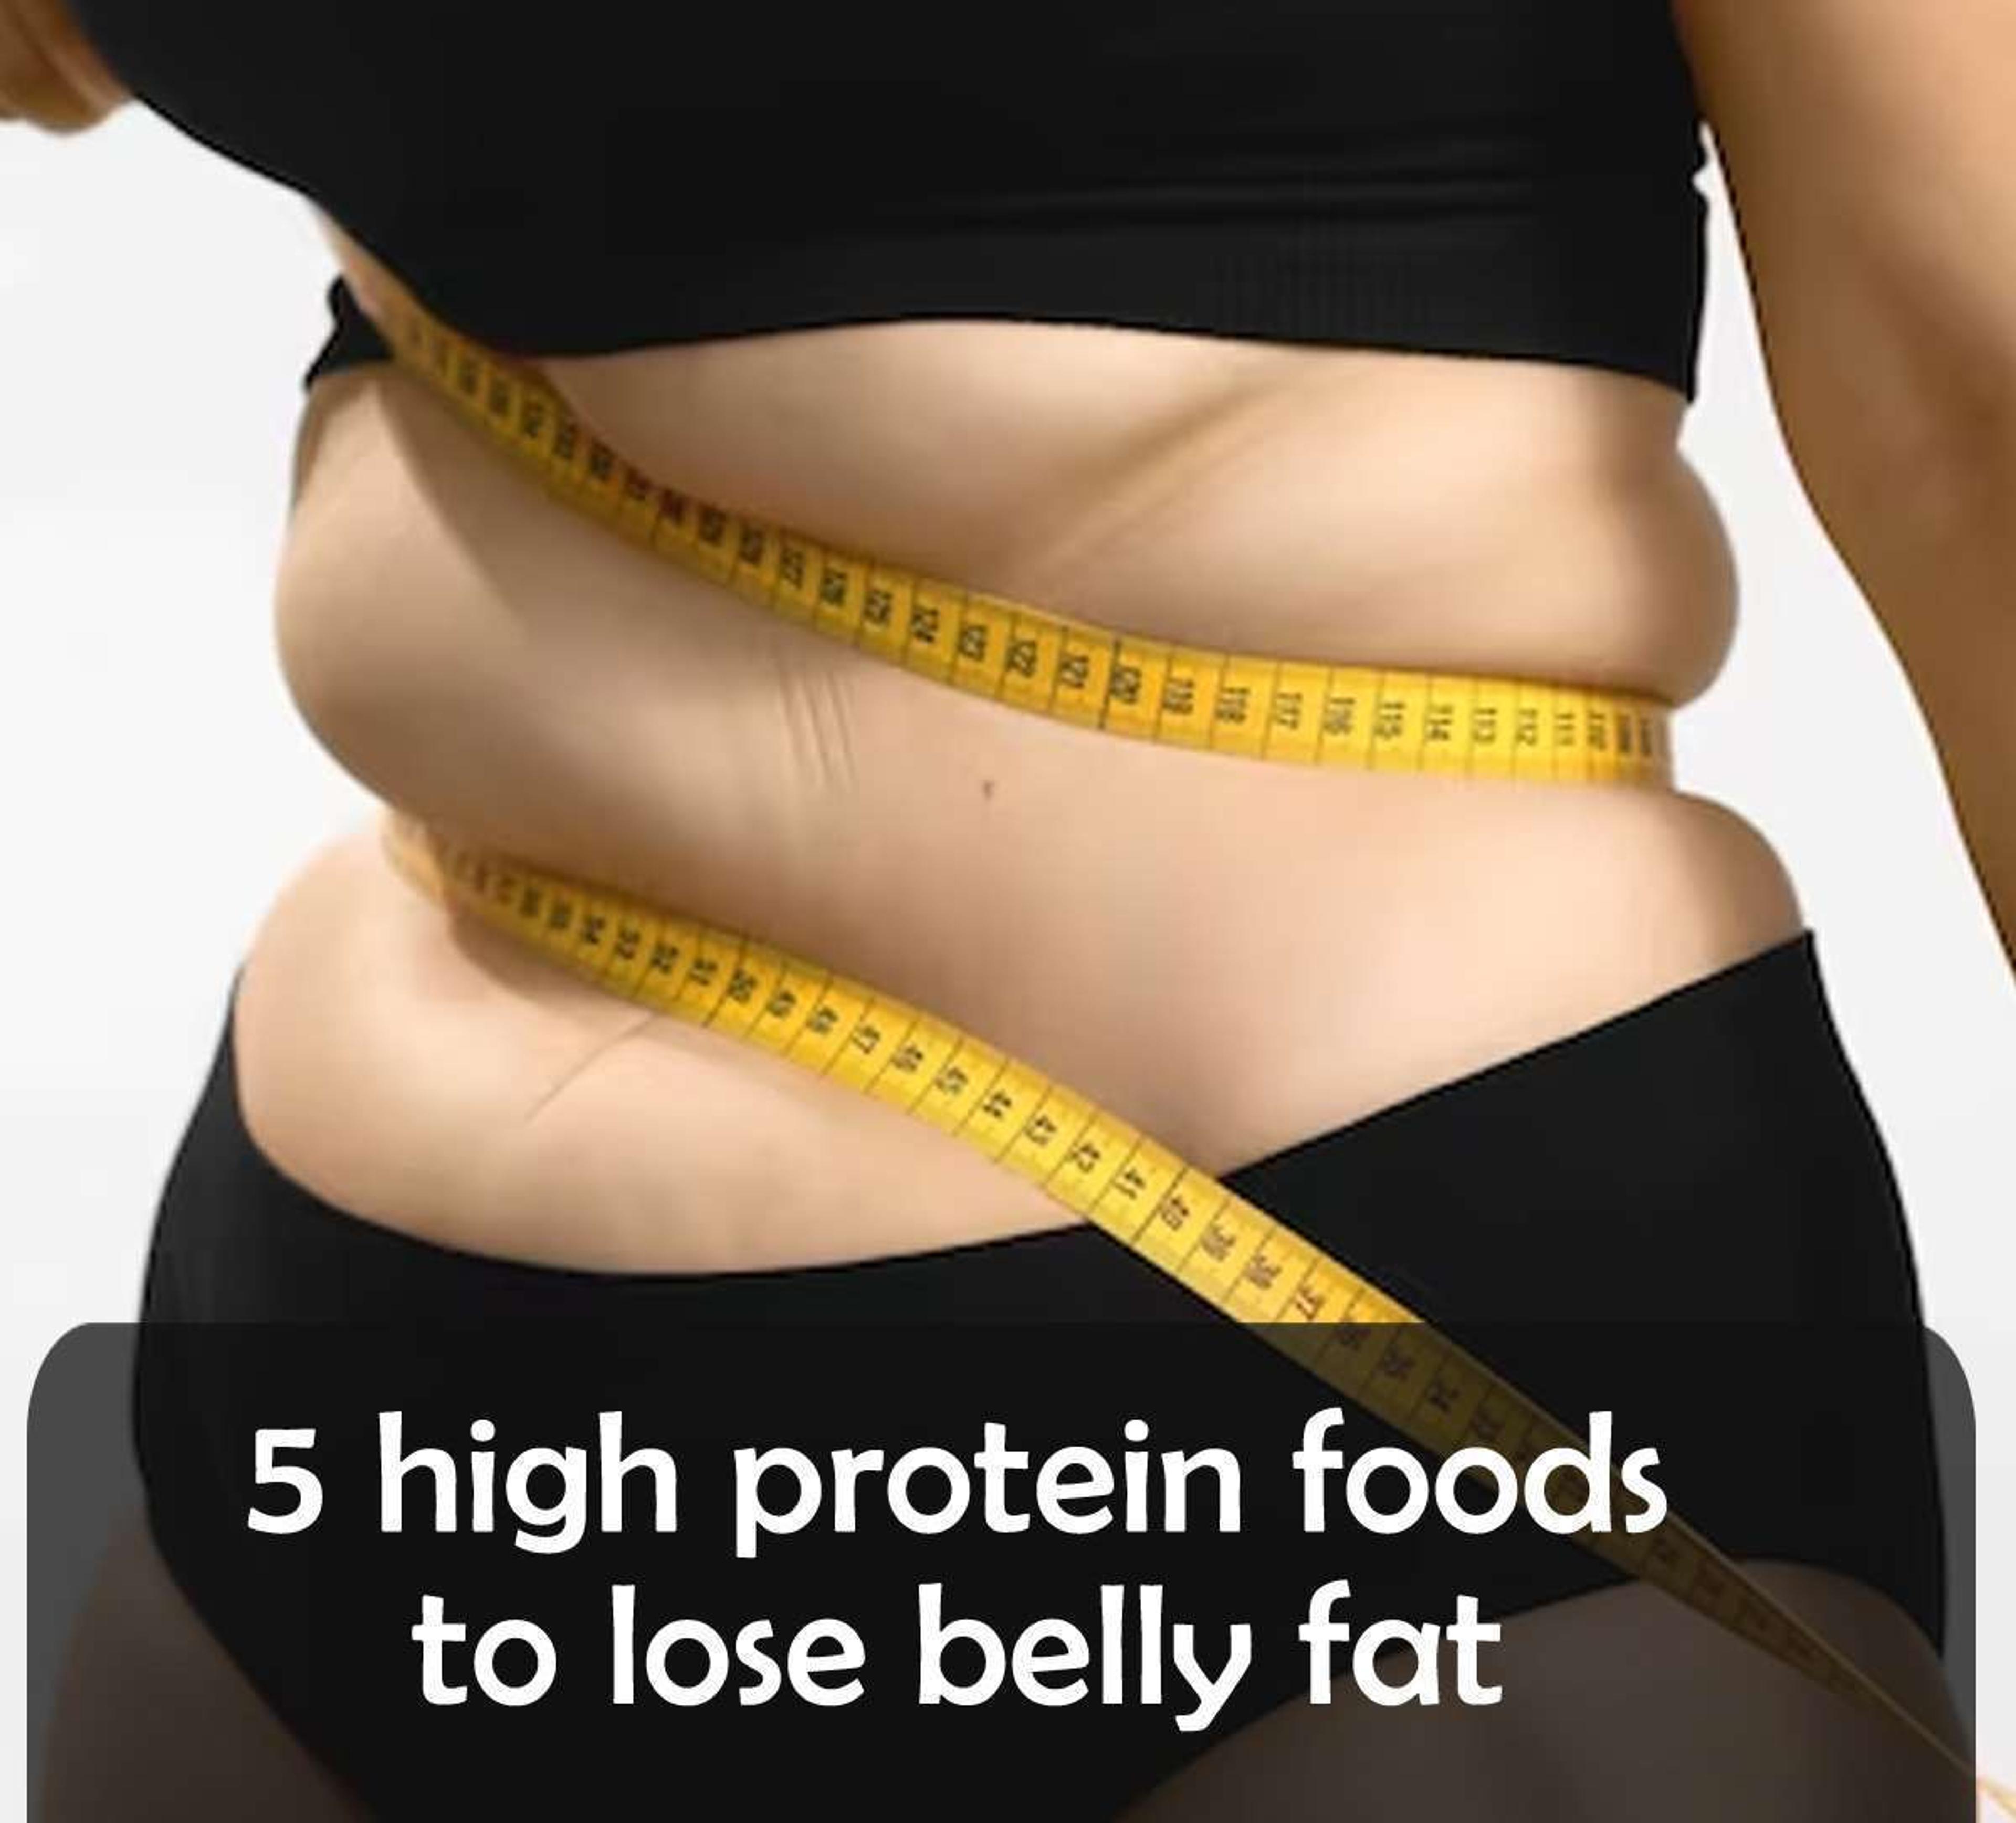 सिर्फ एक महीने में ही घटेगी 5 से 7 किलो पेट की चर्बी,  खाएं ये 5 बेहतरीन प्रोटीन युक्त भोजन